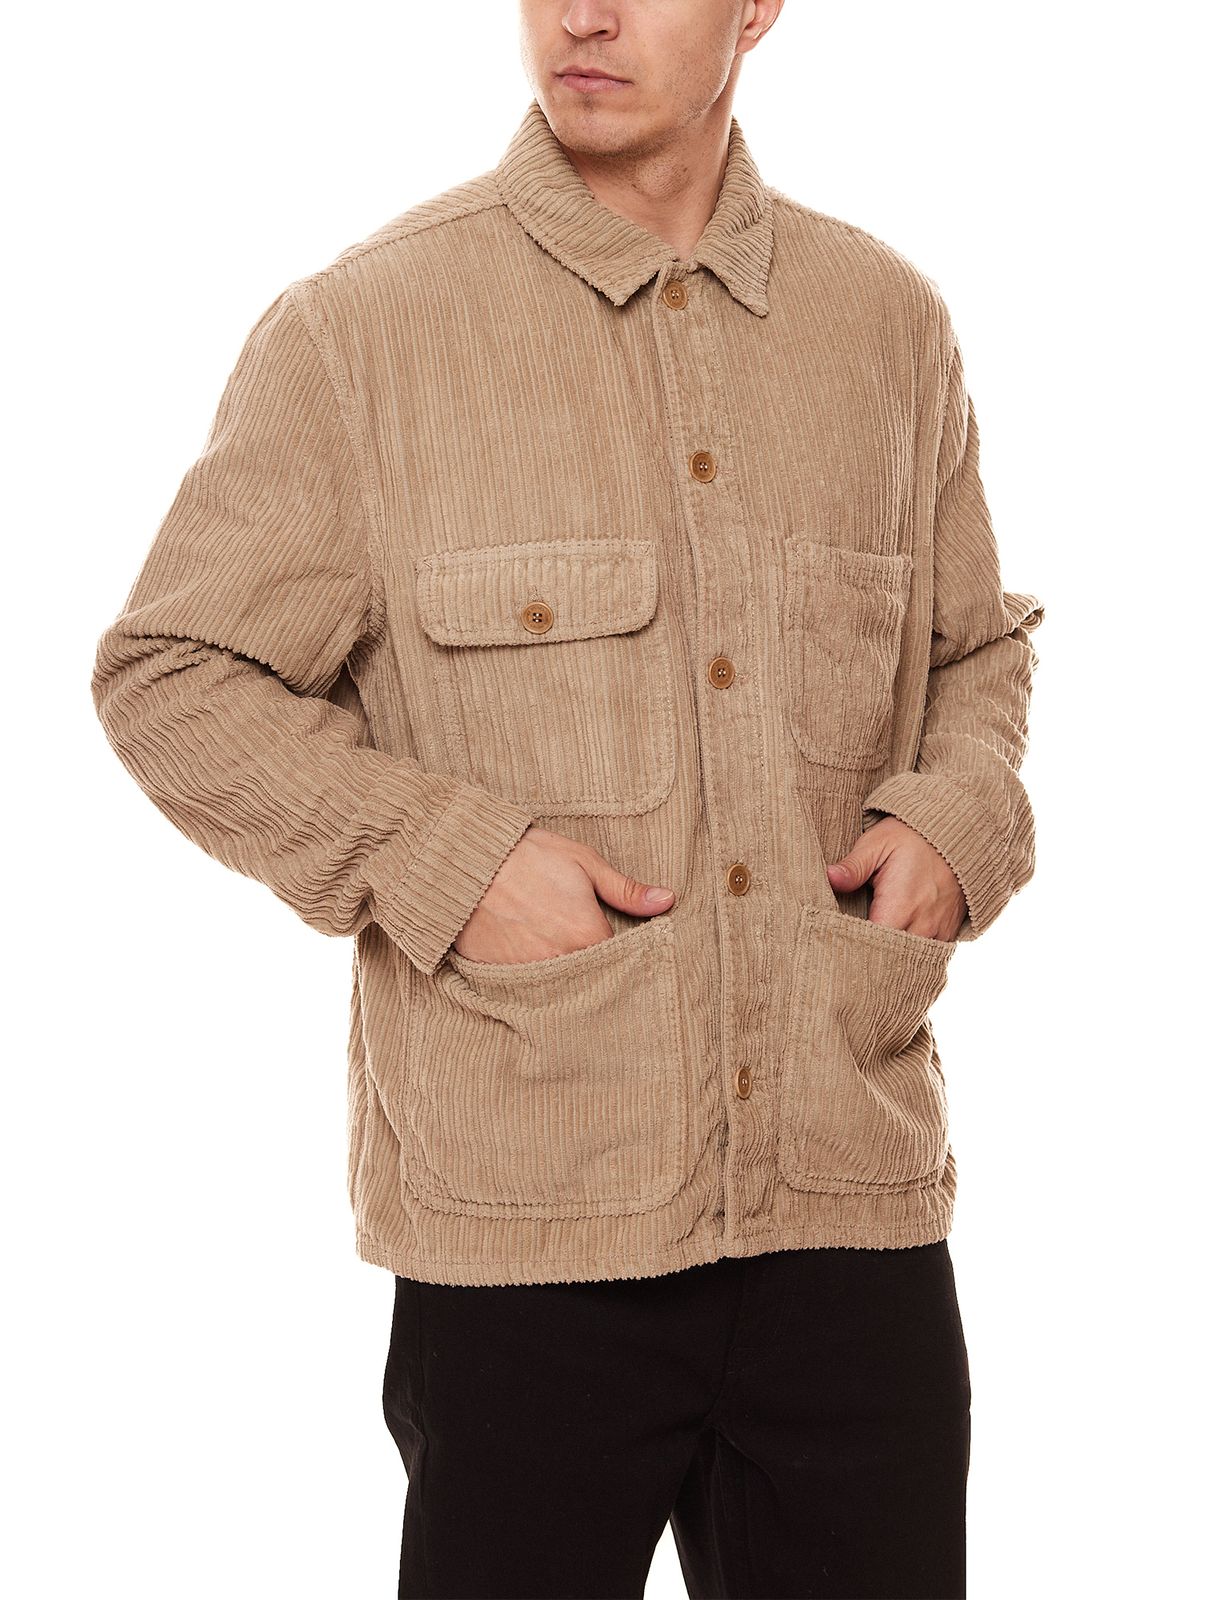 STONES Herren Übergangs-Jacke mit vielen Taschen Cord-Jacke 40003-20047 326 im Workwear-Design Beige von STONES